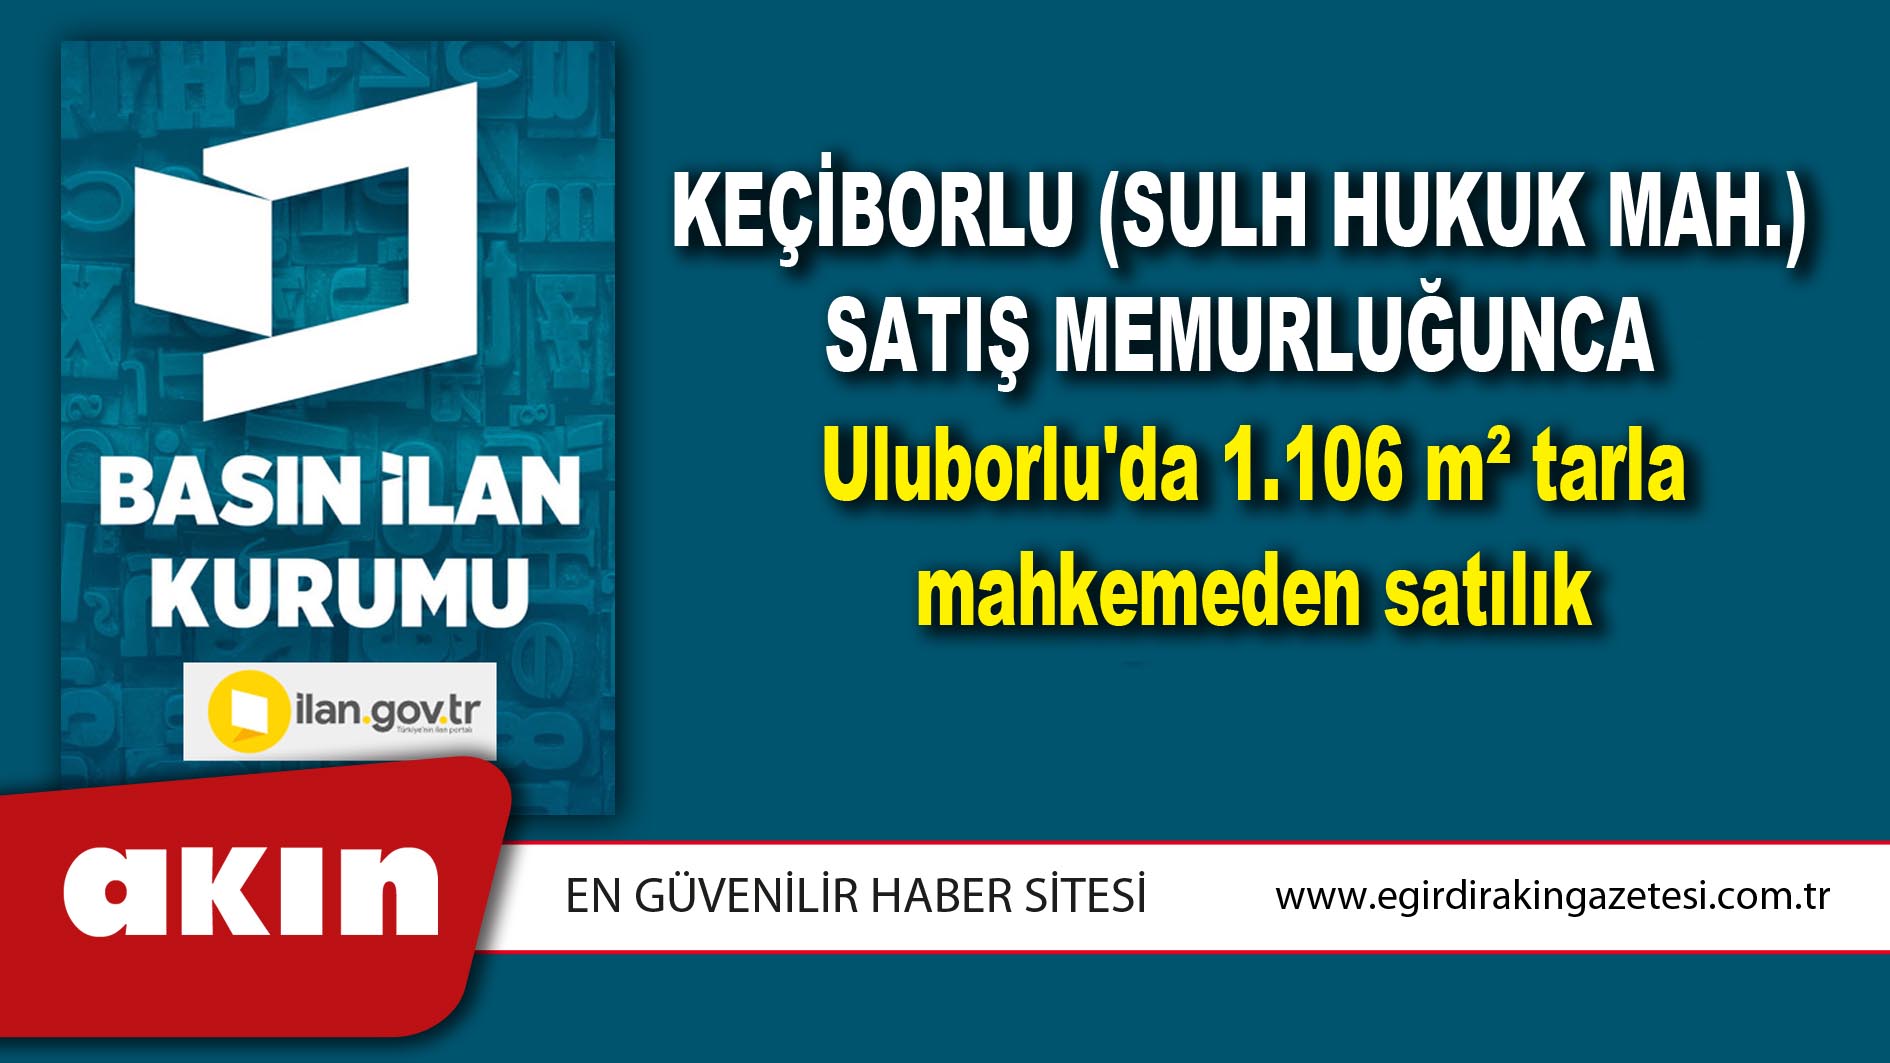 Keçiborlu (Sulh Hukuk Mah.) Satış Memurluğunca Uluborlu'da 1.106 m² tarla mahkemeden satılık